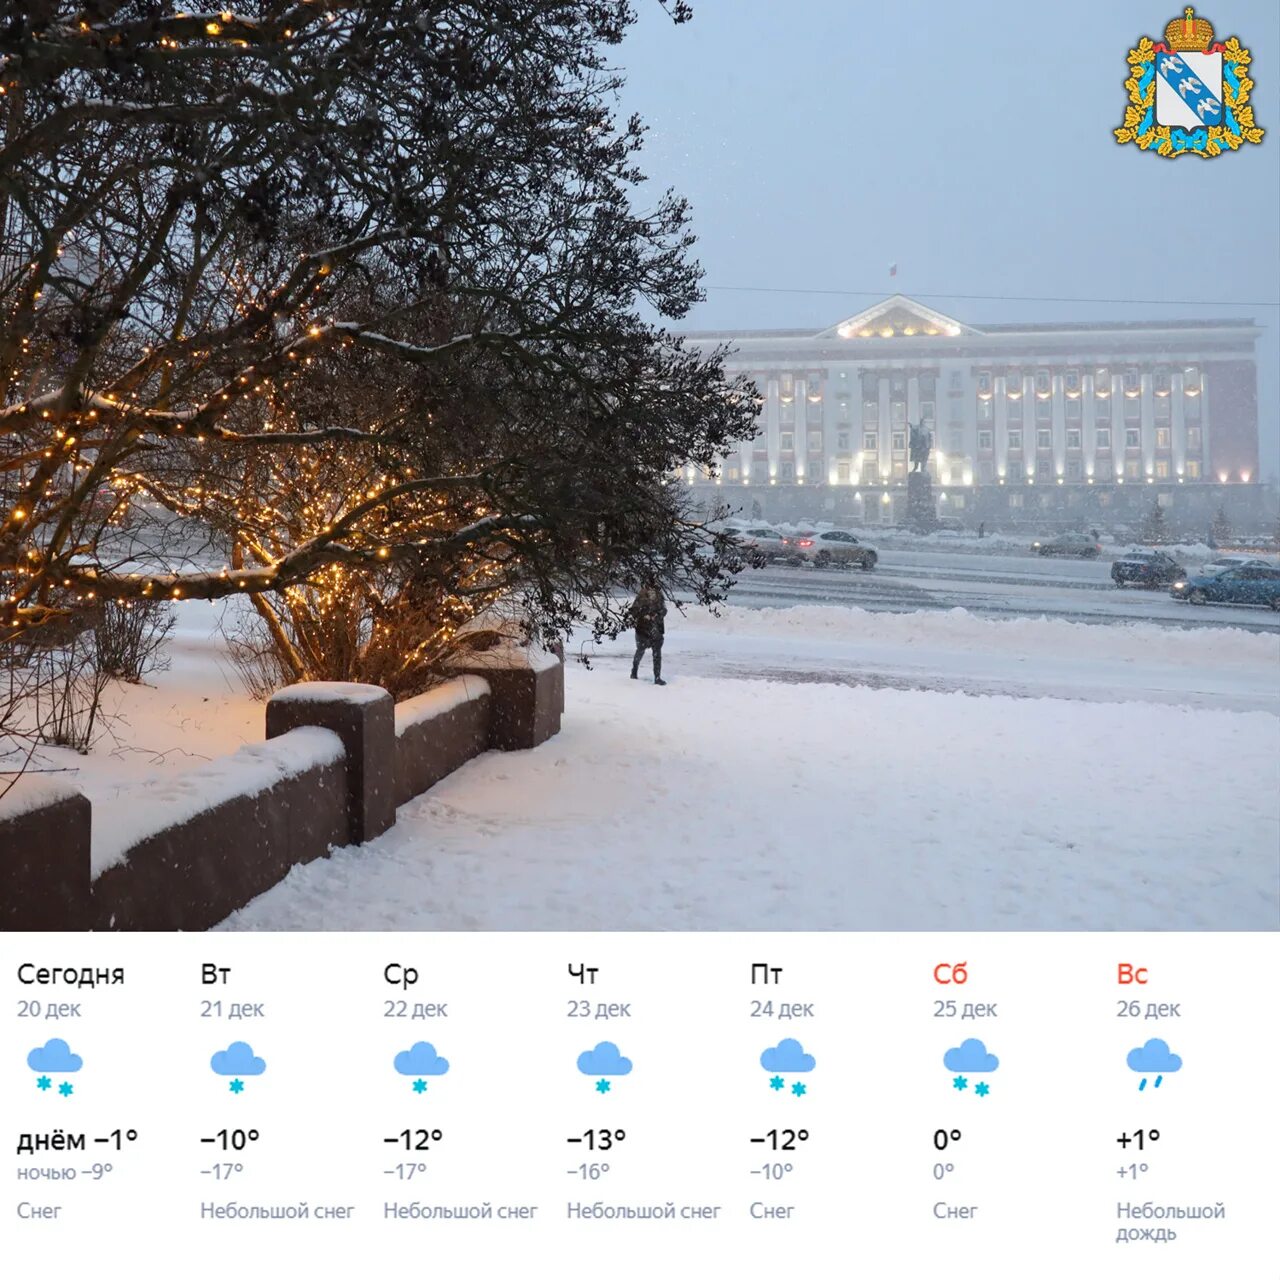 Снегопад в Курске в марте 2013. Снегопад в Курске в марте 2013 года. Белгород погода зимой. Курск погода фото сейчас. Погода курска неделю 10 дней